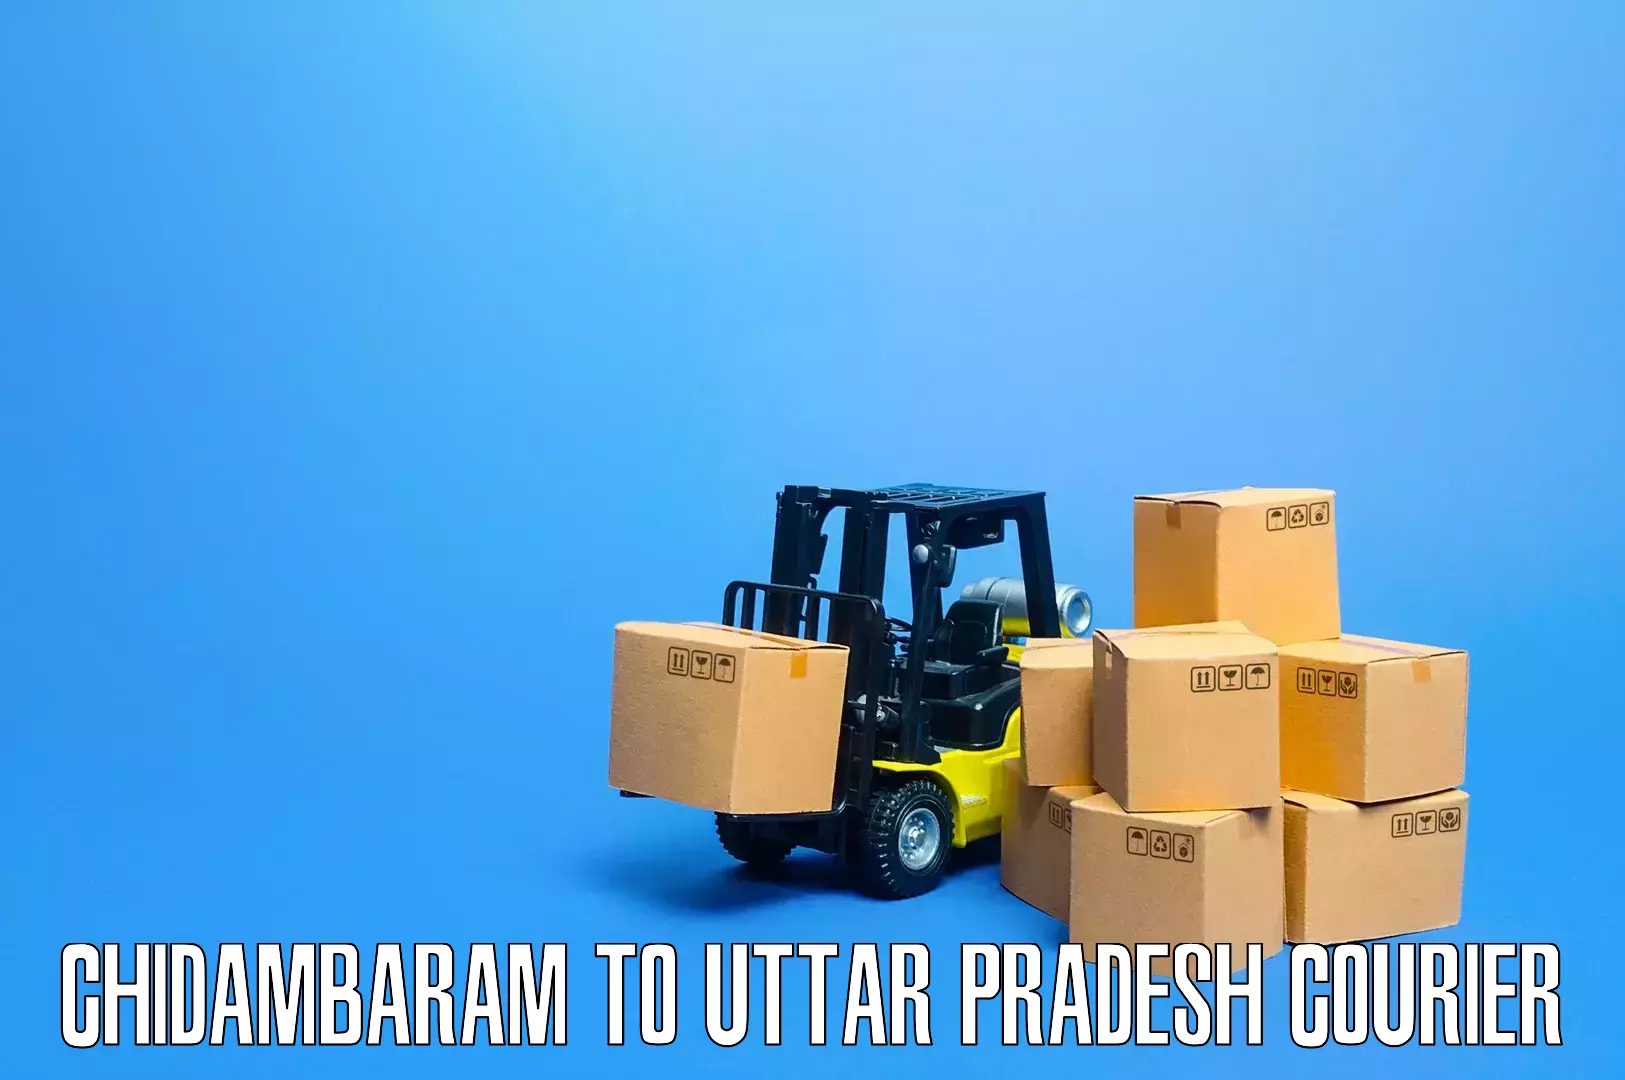 Home shifting experts Chidambaram to Uttar Pradesh